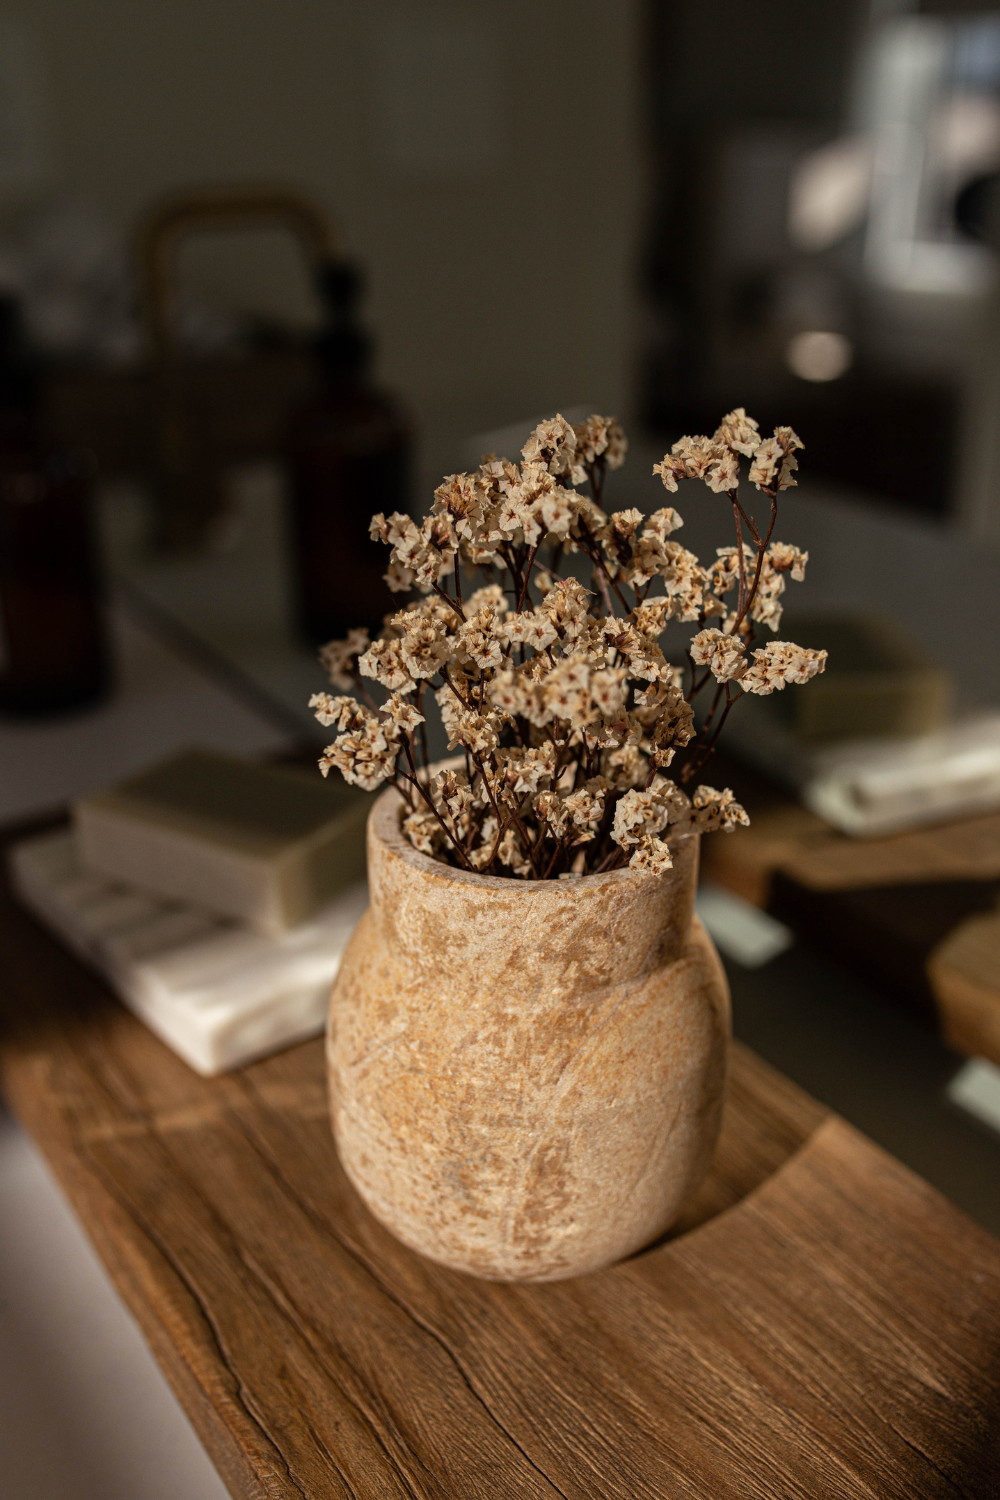 Sandstone Vase - Luxe B Co